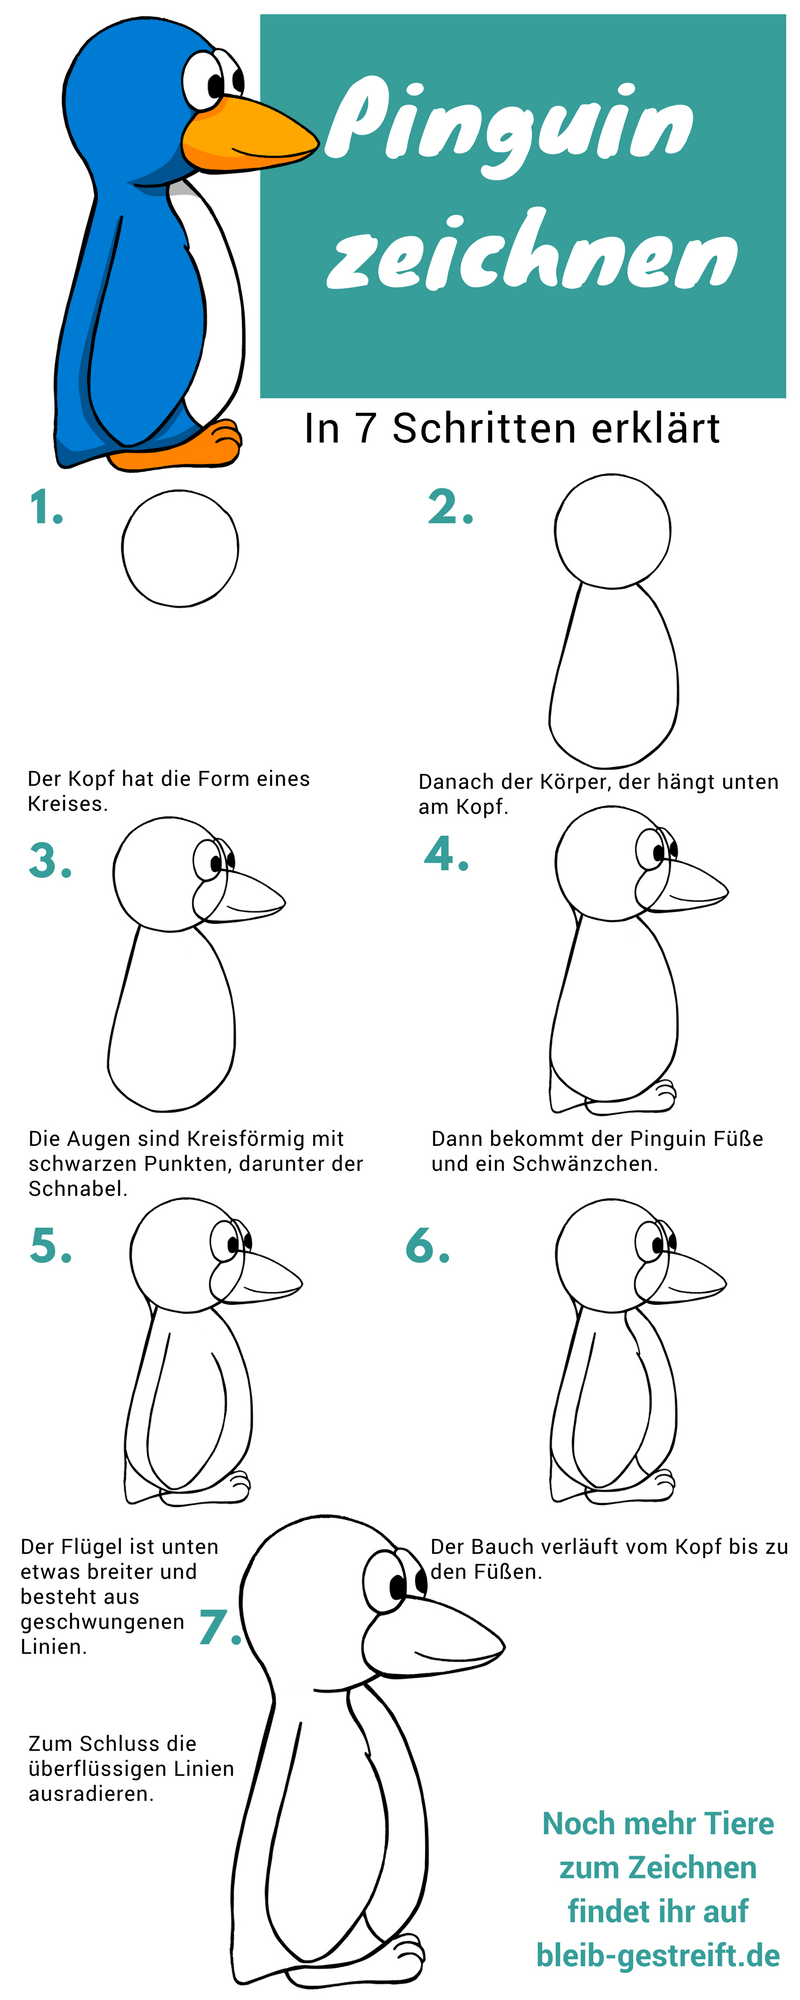 Pinguin Zeichnen Lernen Eine Einfache Anleitung Mit 7 Schritten Pinguin Zeichnen Zeichnen Lernen Pinguin Malen